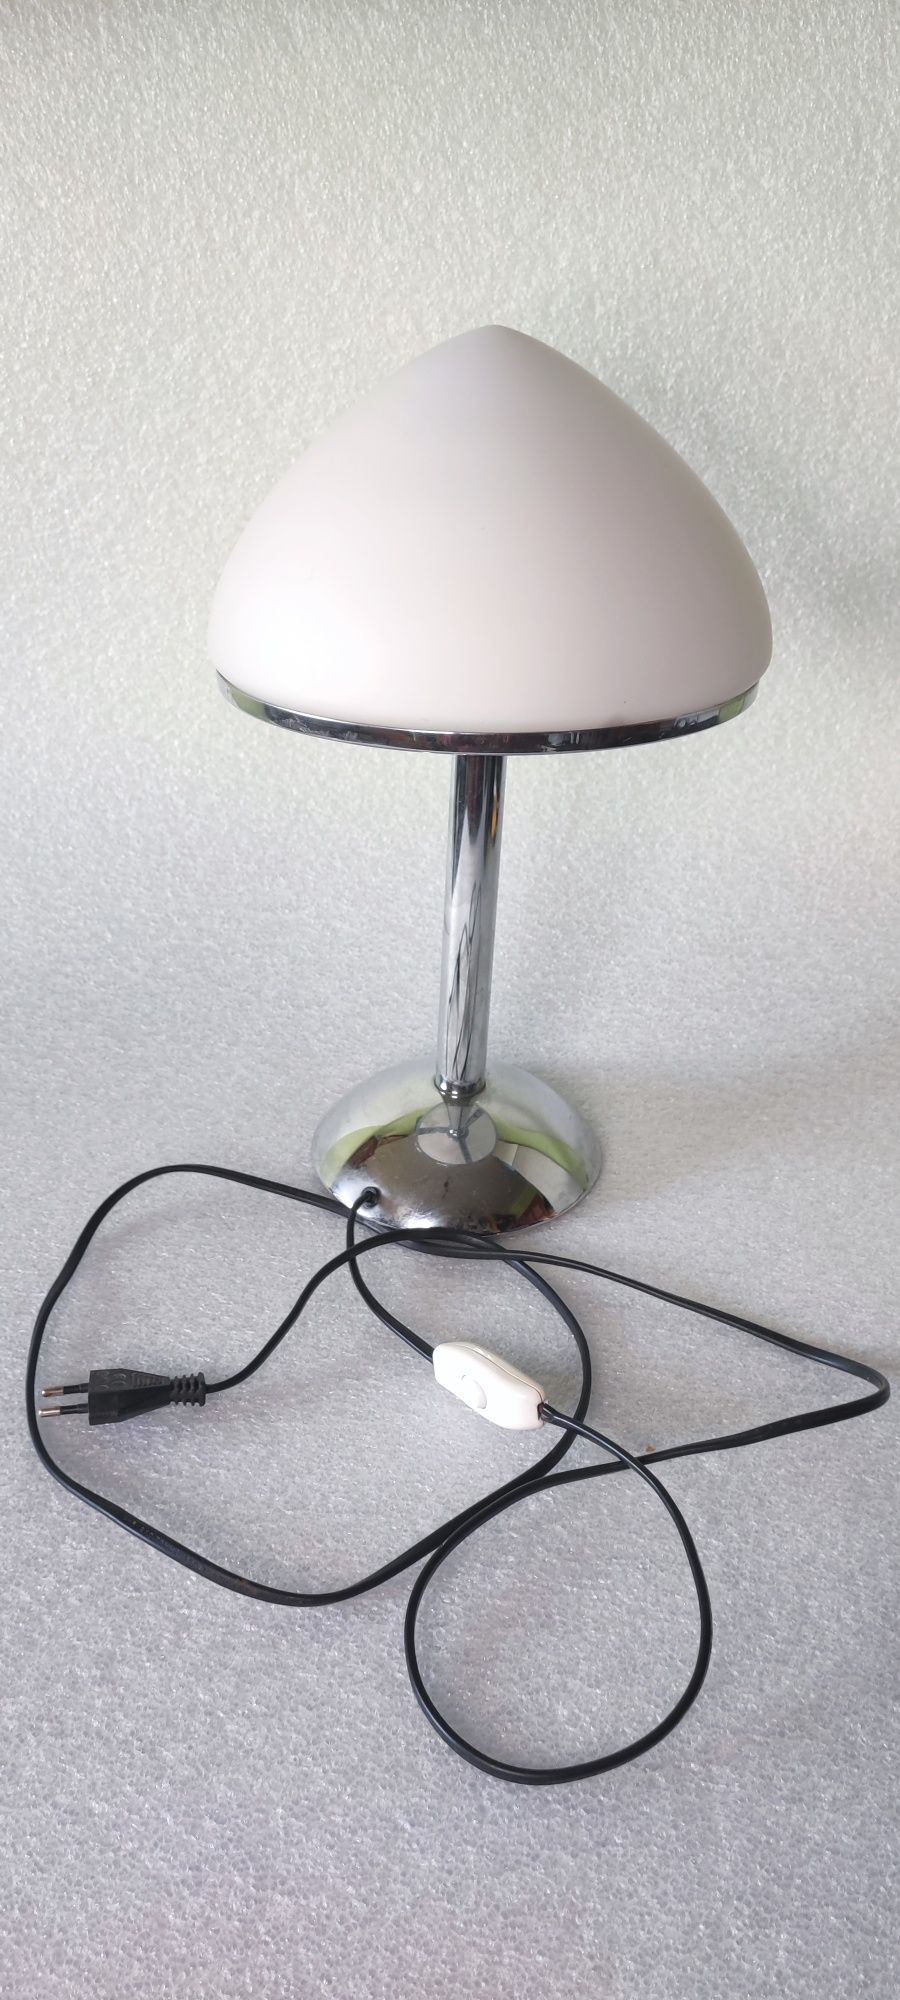 Lampa stołowa gabinetowa stojąca lampka nocna